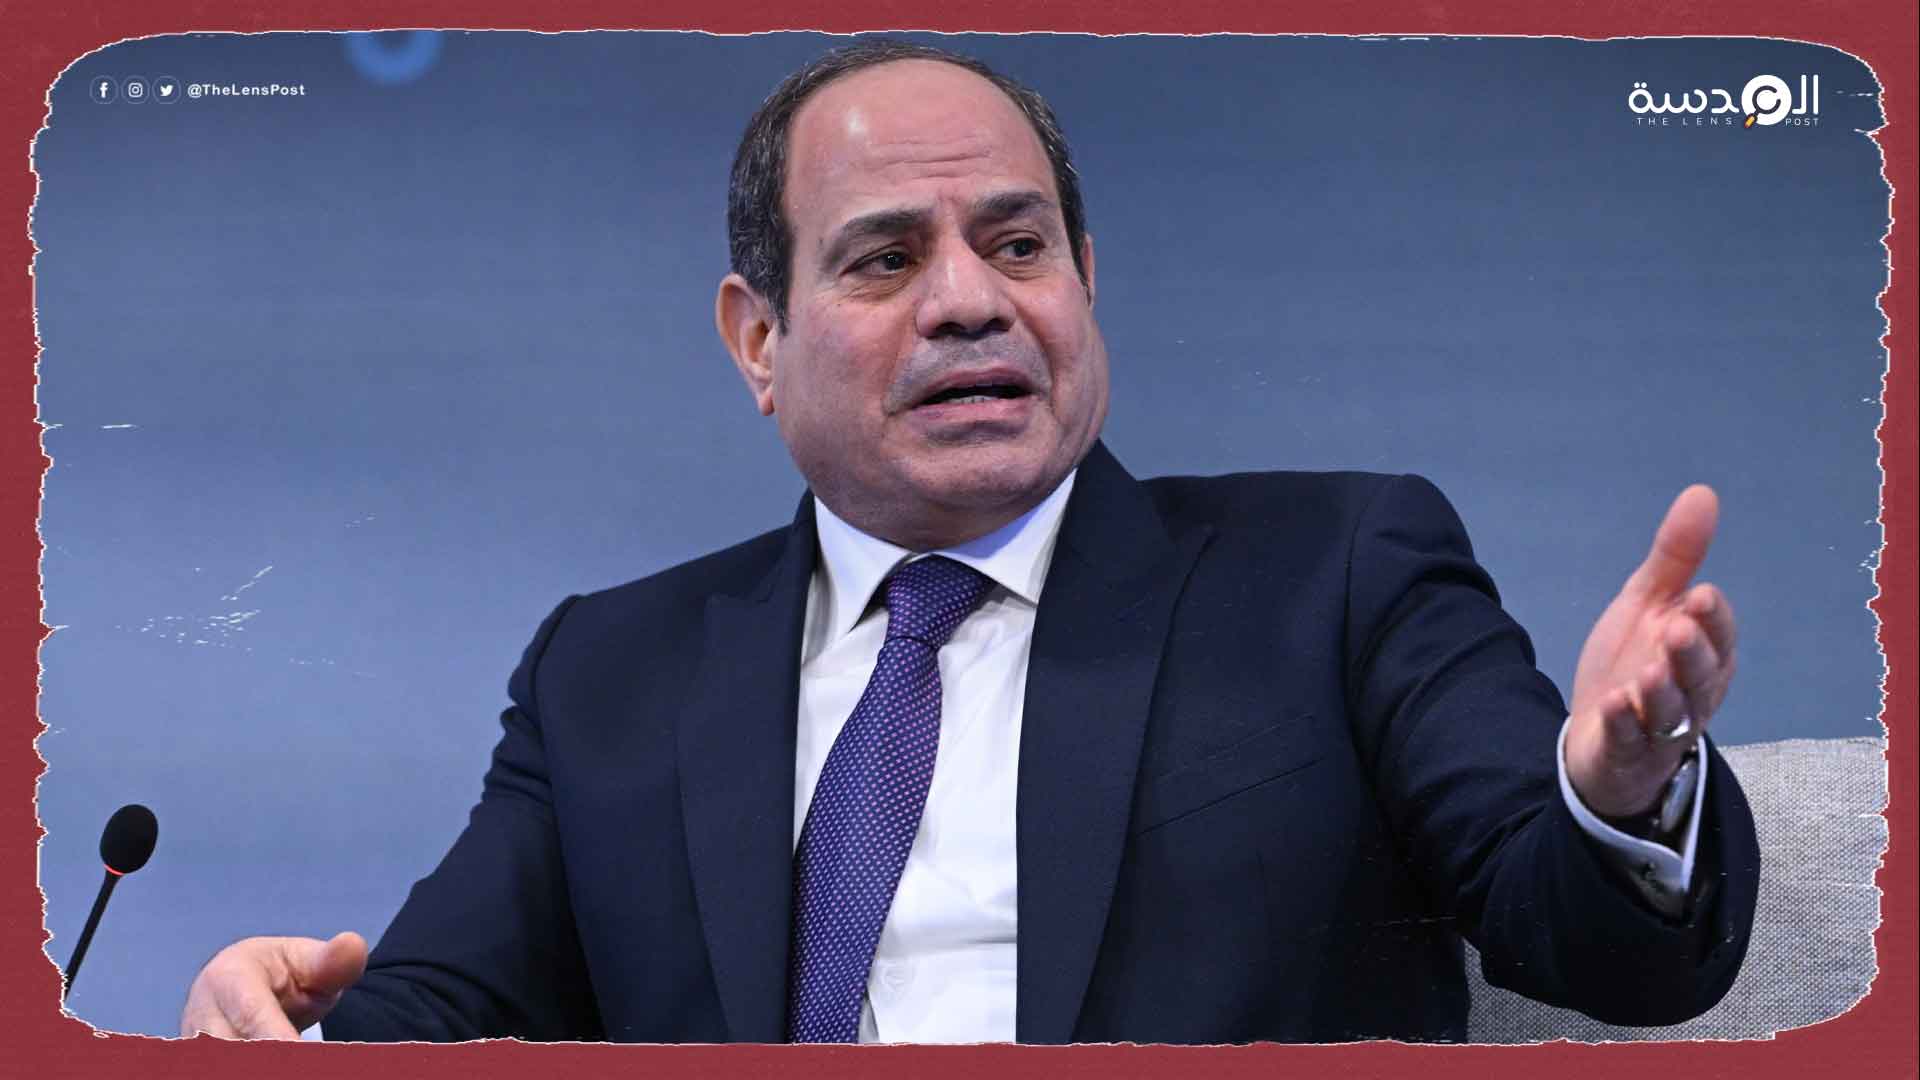 دعوات لإنهاء حكم السيسي ومطالب بإجراء انتخابات رئاسية مبكرة